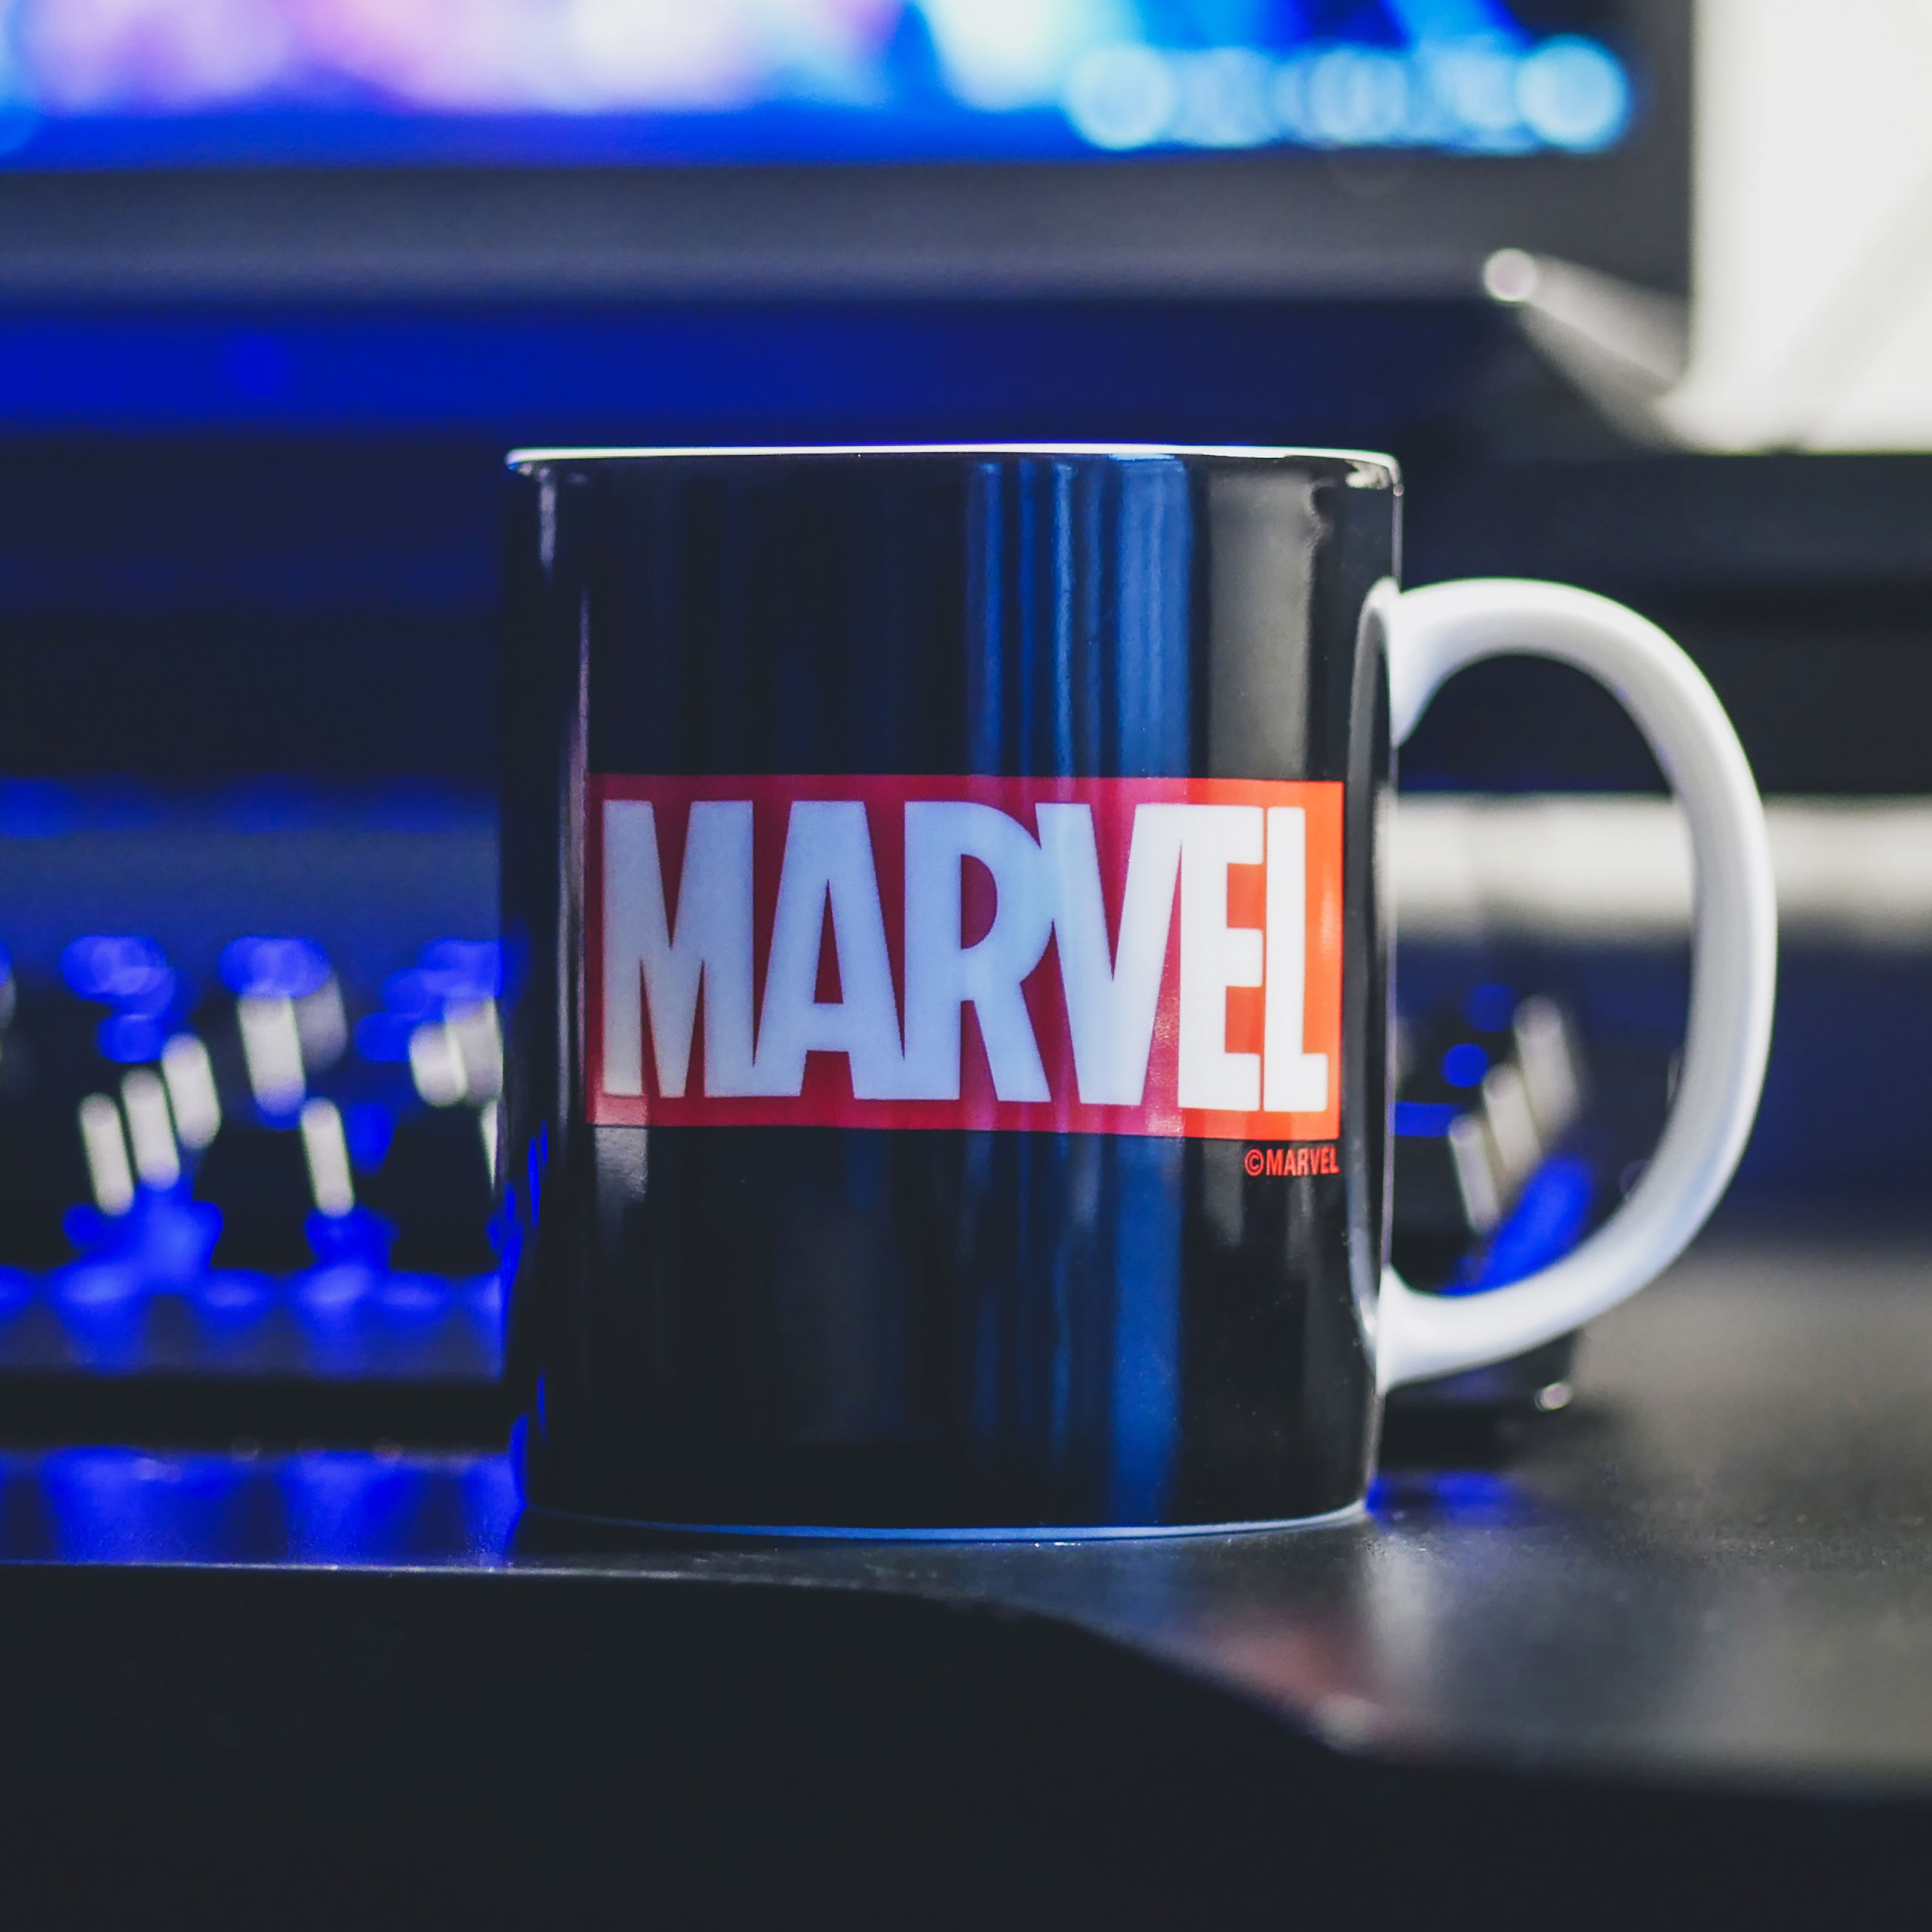 Marvel - Logo Tasse schwarz